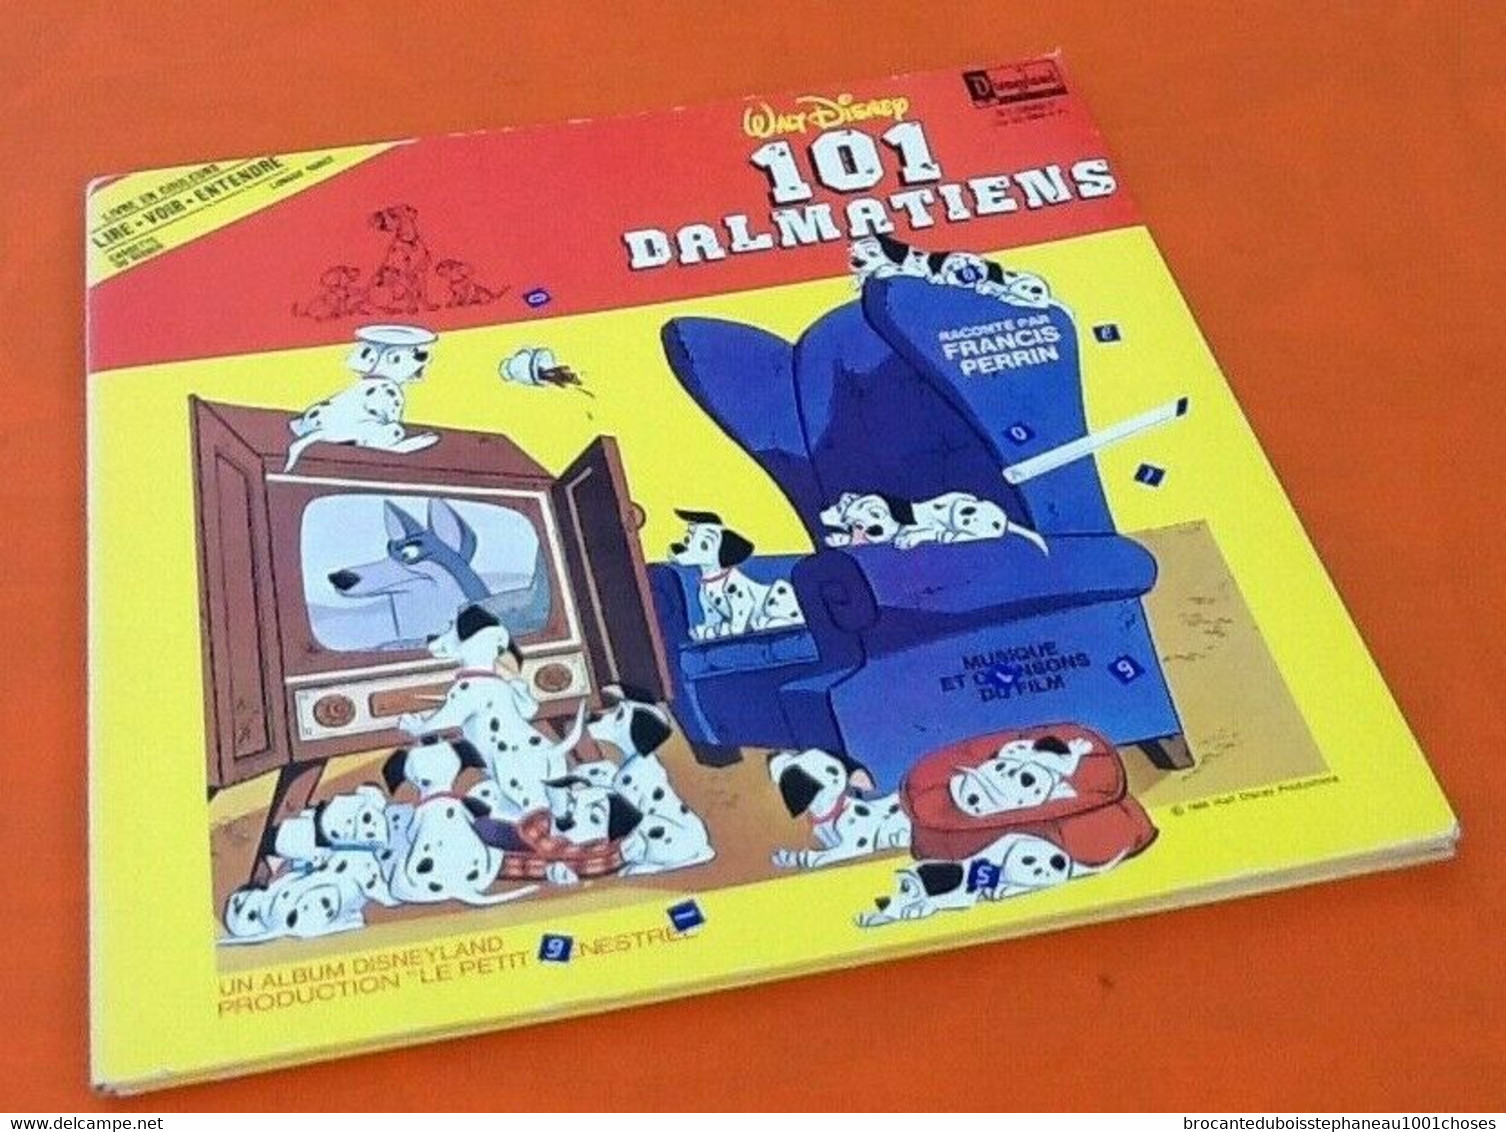 Album Vinyle 33 Tours  Walt Disney (1980)  101 Dalmatiens  Raconté Par Francis Perrin - Children